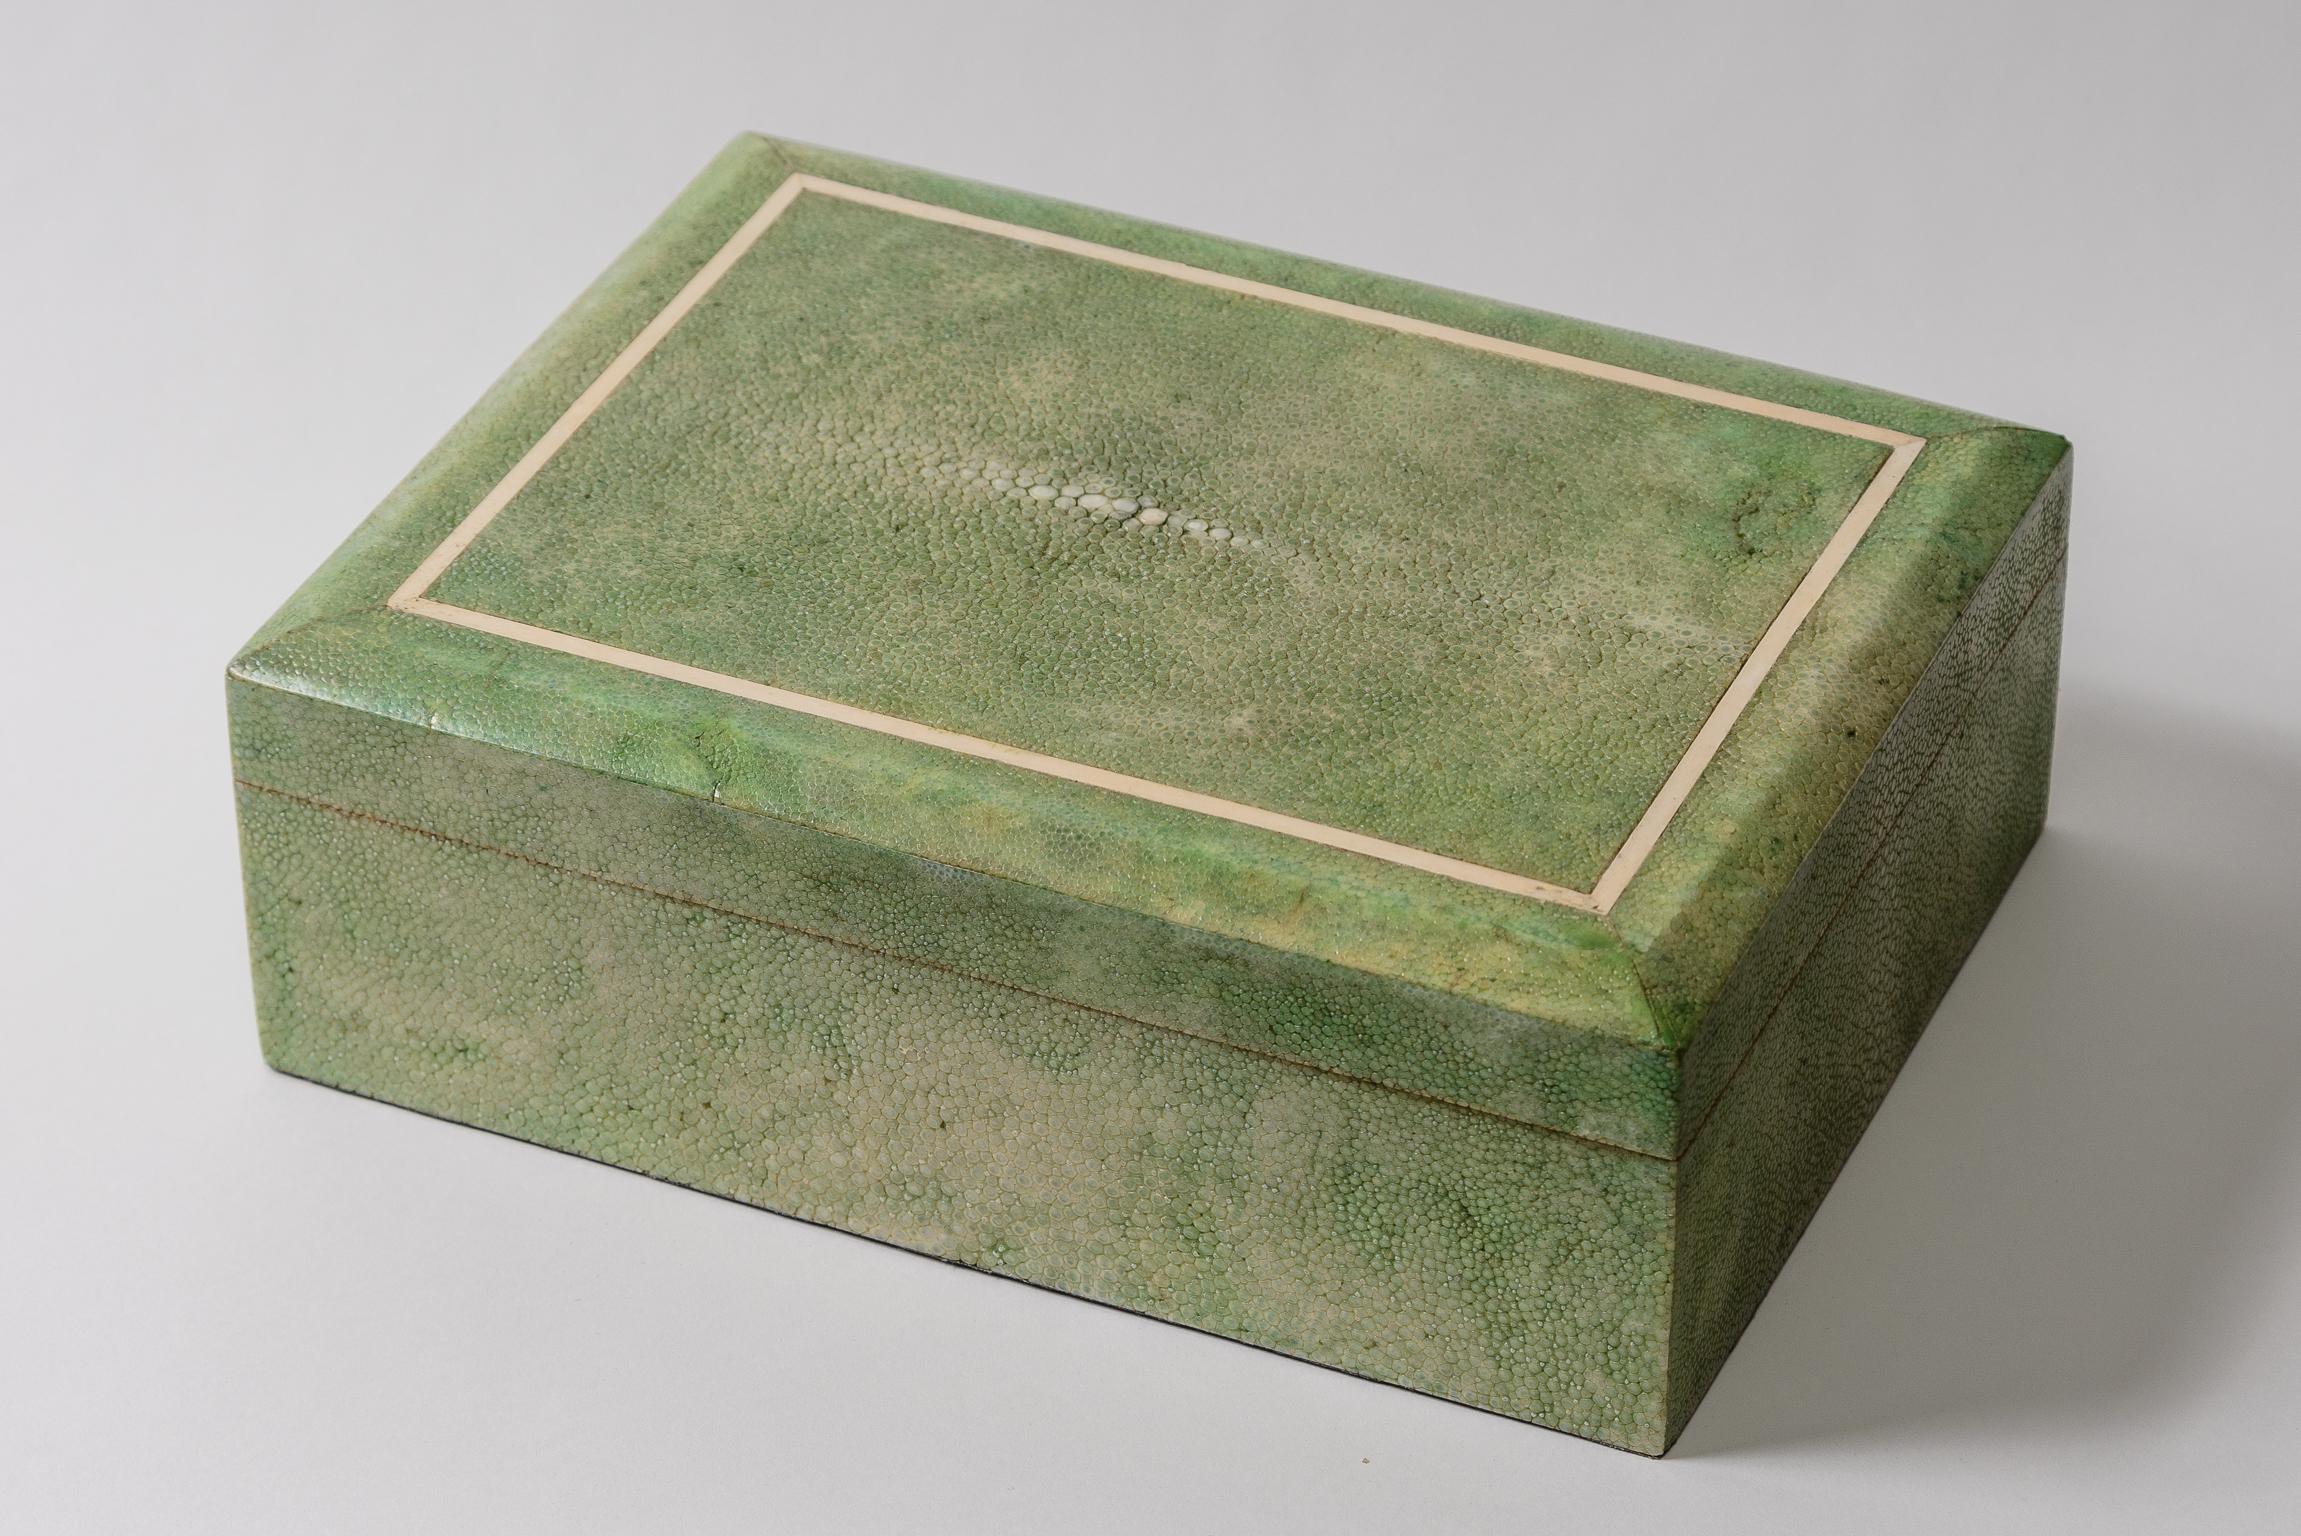 Green shagreen Box
Mahogany interior
Faux Bone inlay